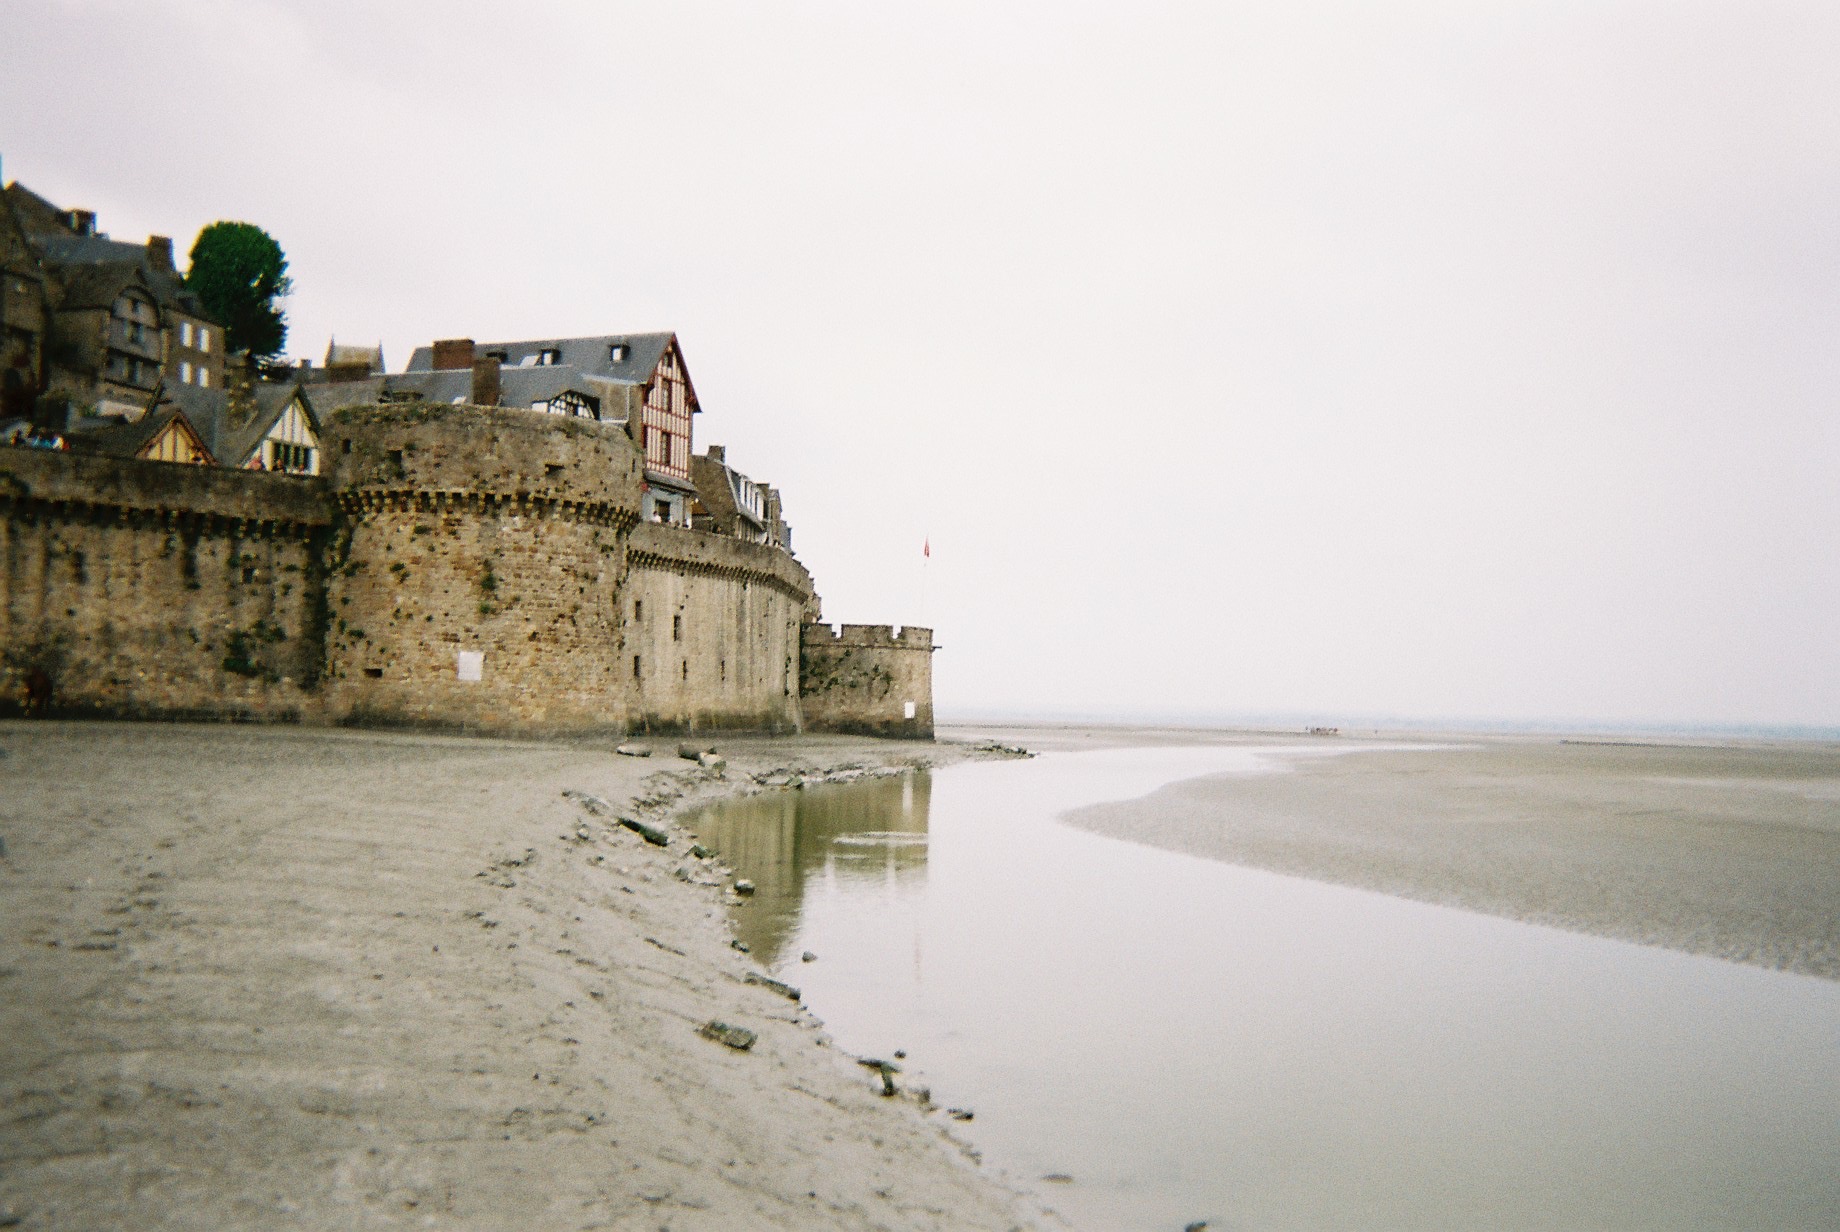 a stone castle on a beach